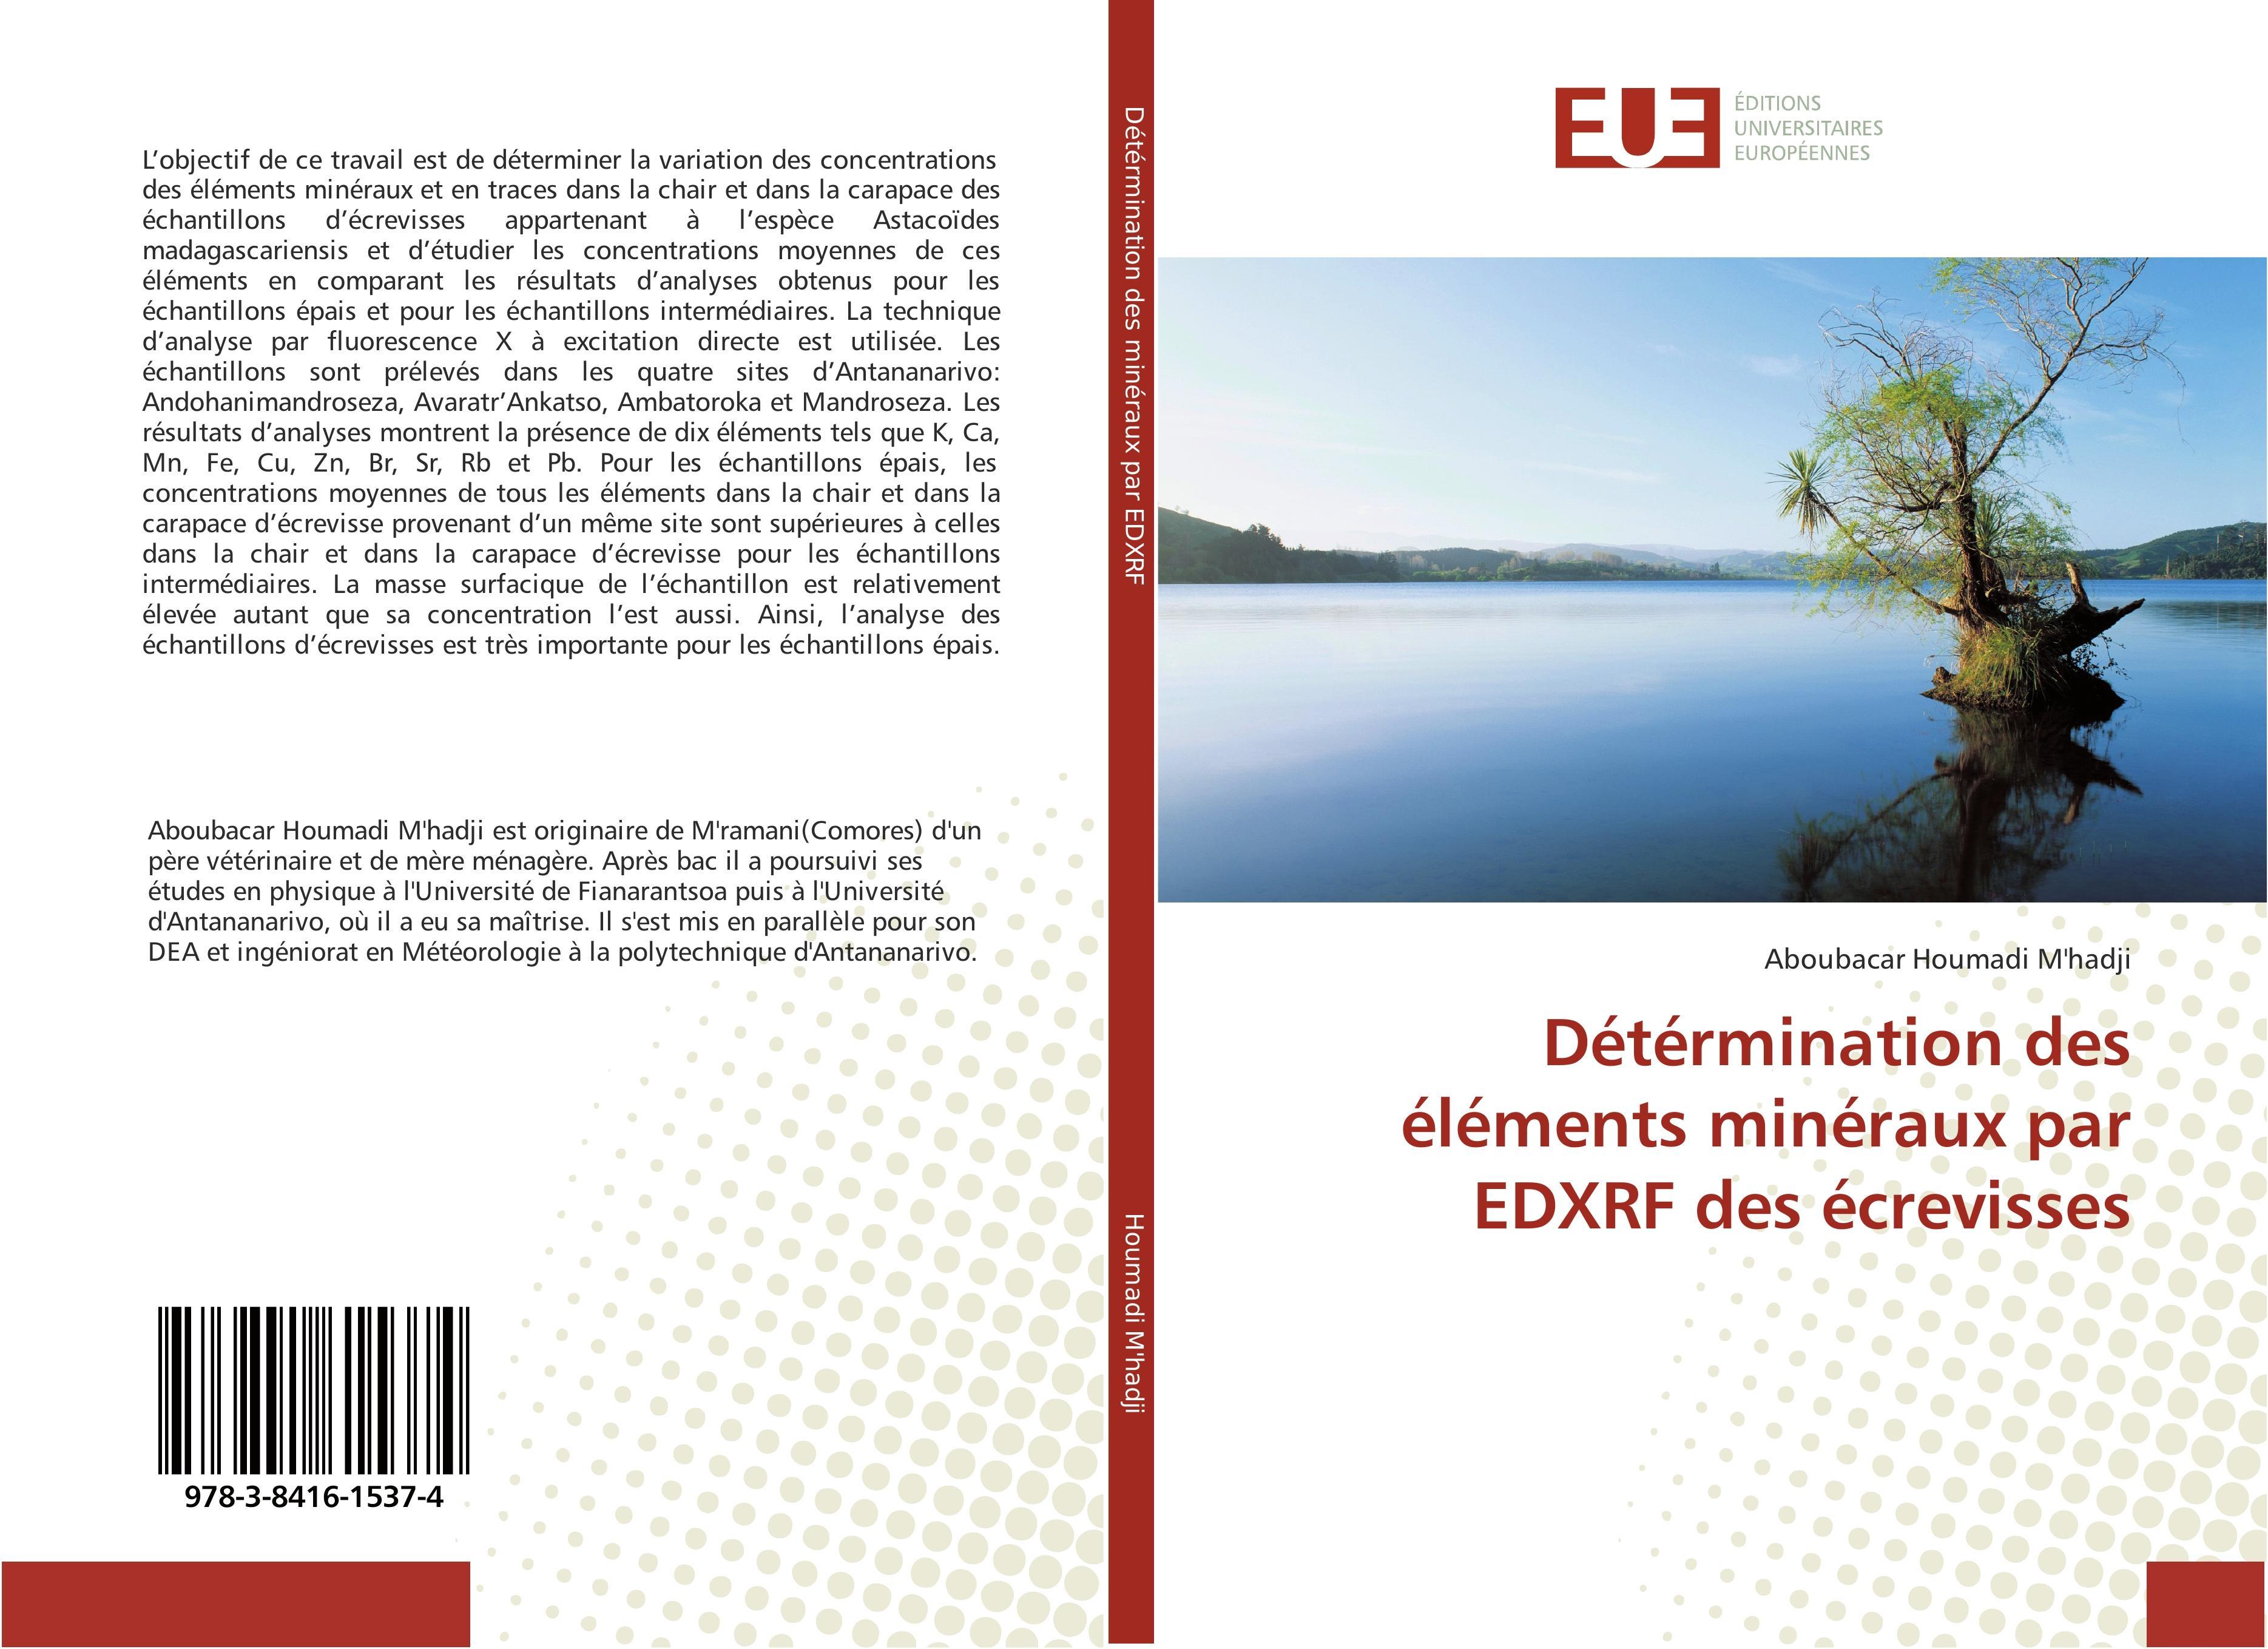 Détérmination des éléments minéraux par EDXRF des écrevisses Aboubacar Houm ... - Photo 1 sur 1